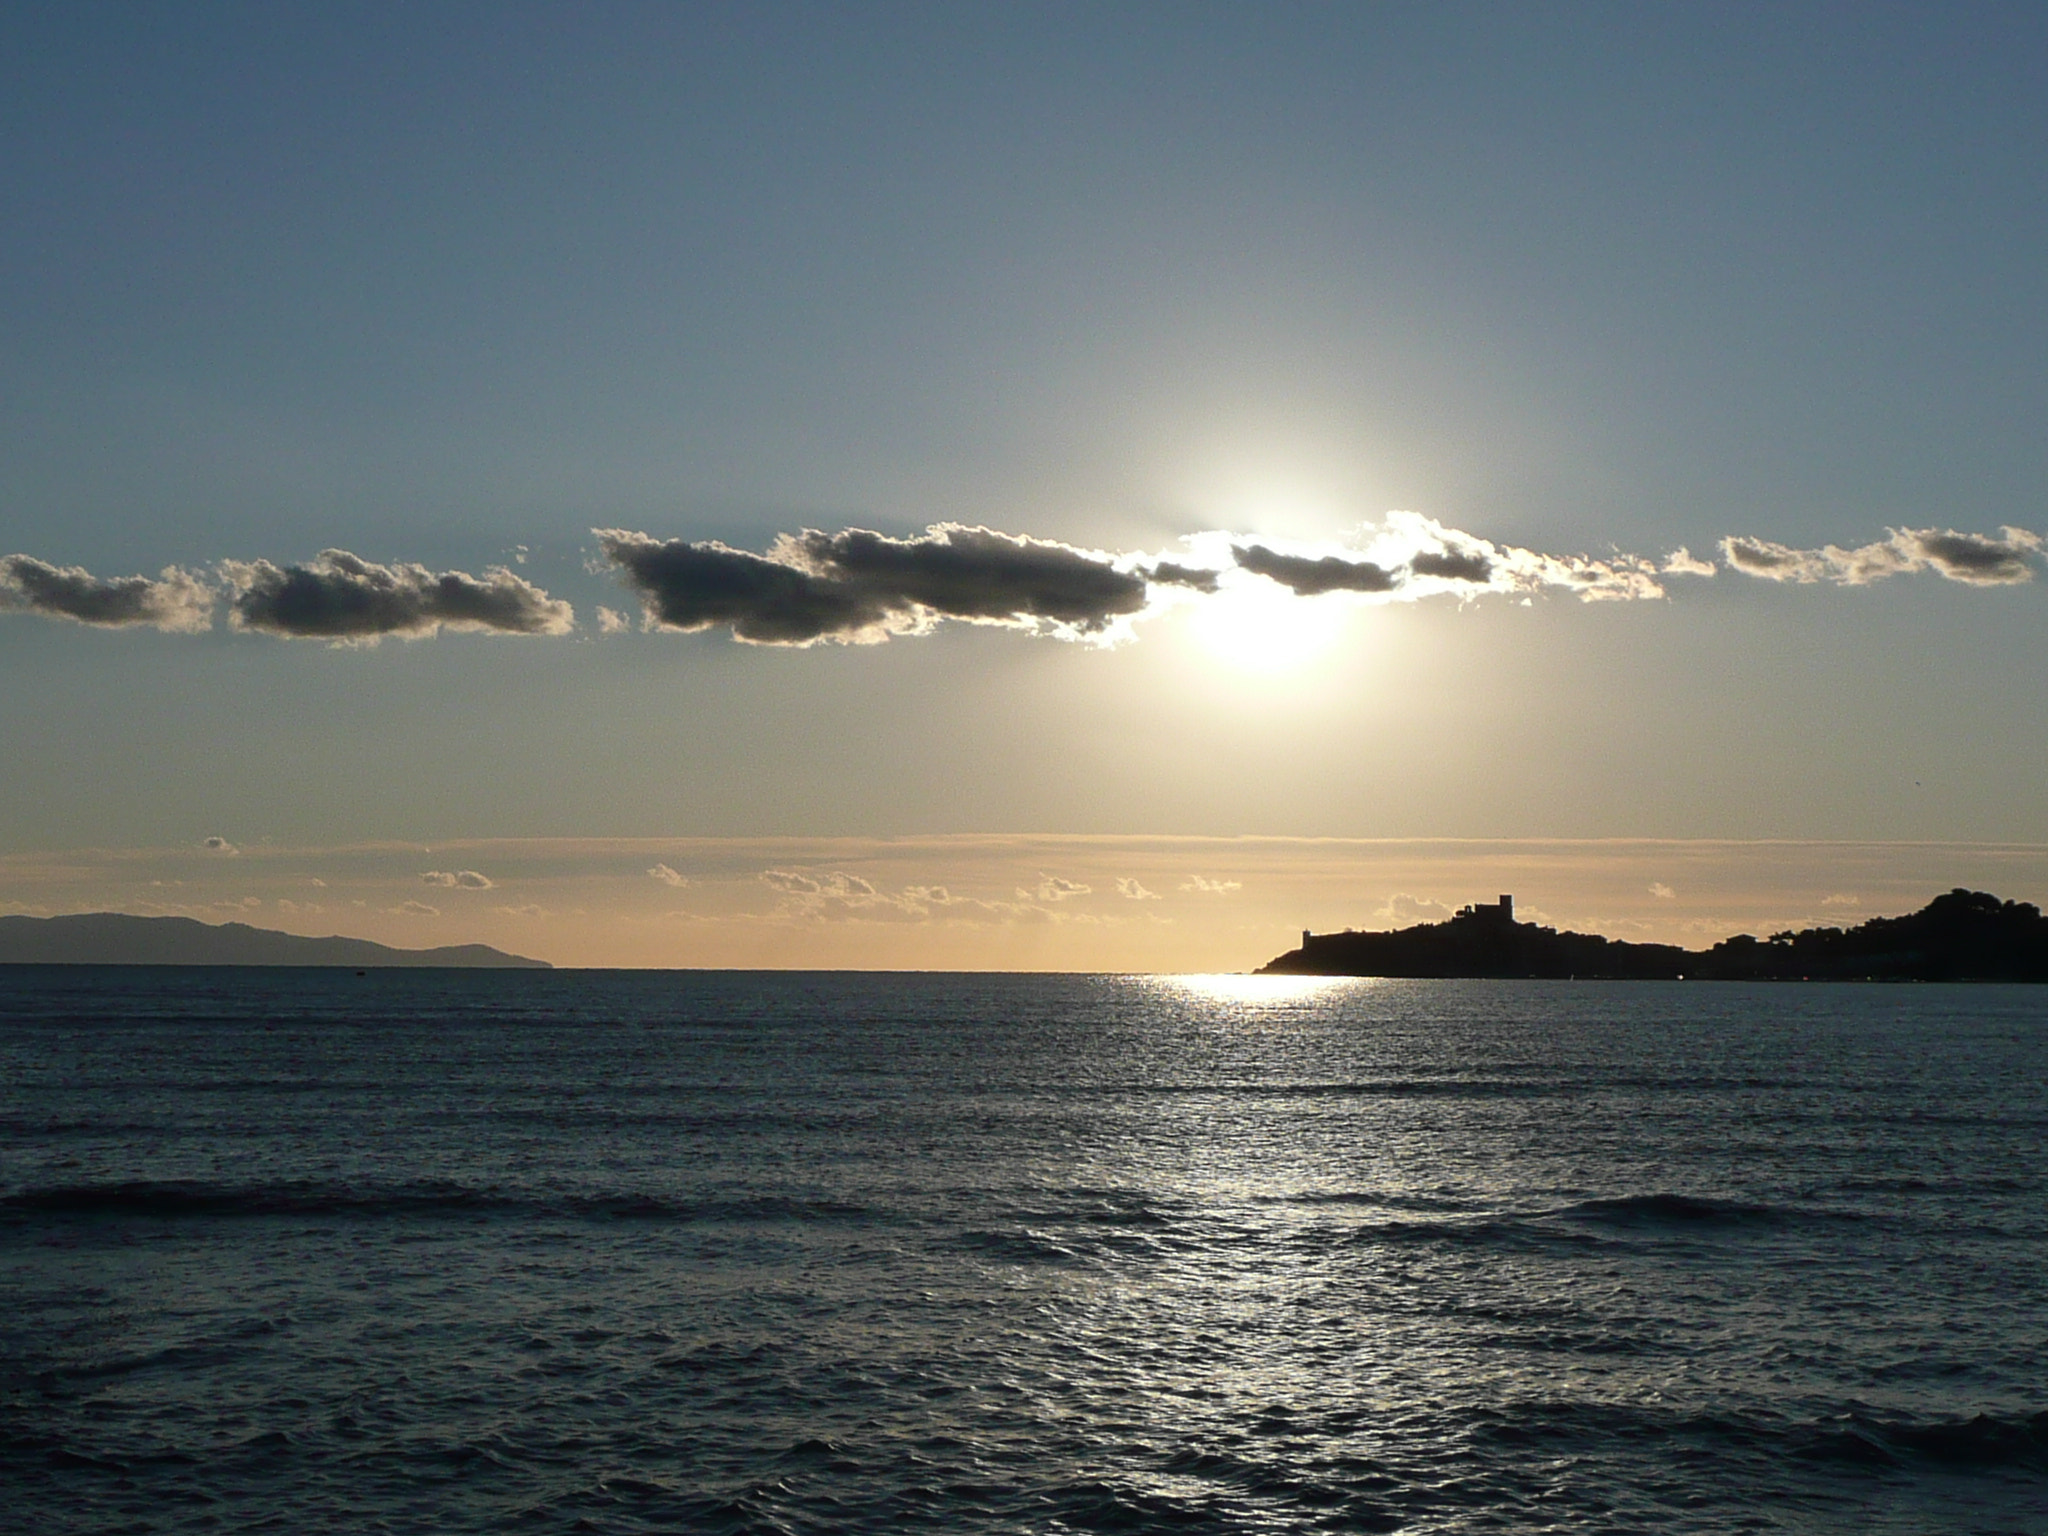 Panasonic DMC-TZ2 sample photo. Il castello sul mare, al tramonto. talamone photography